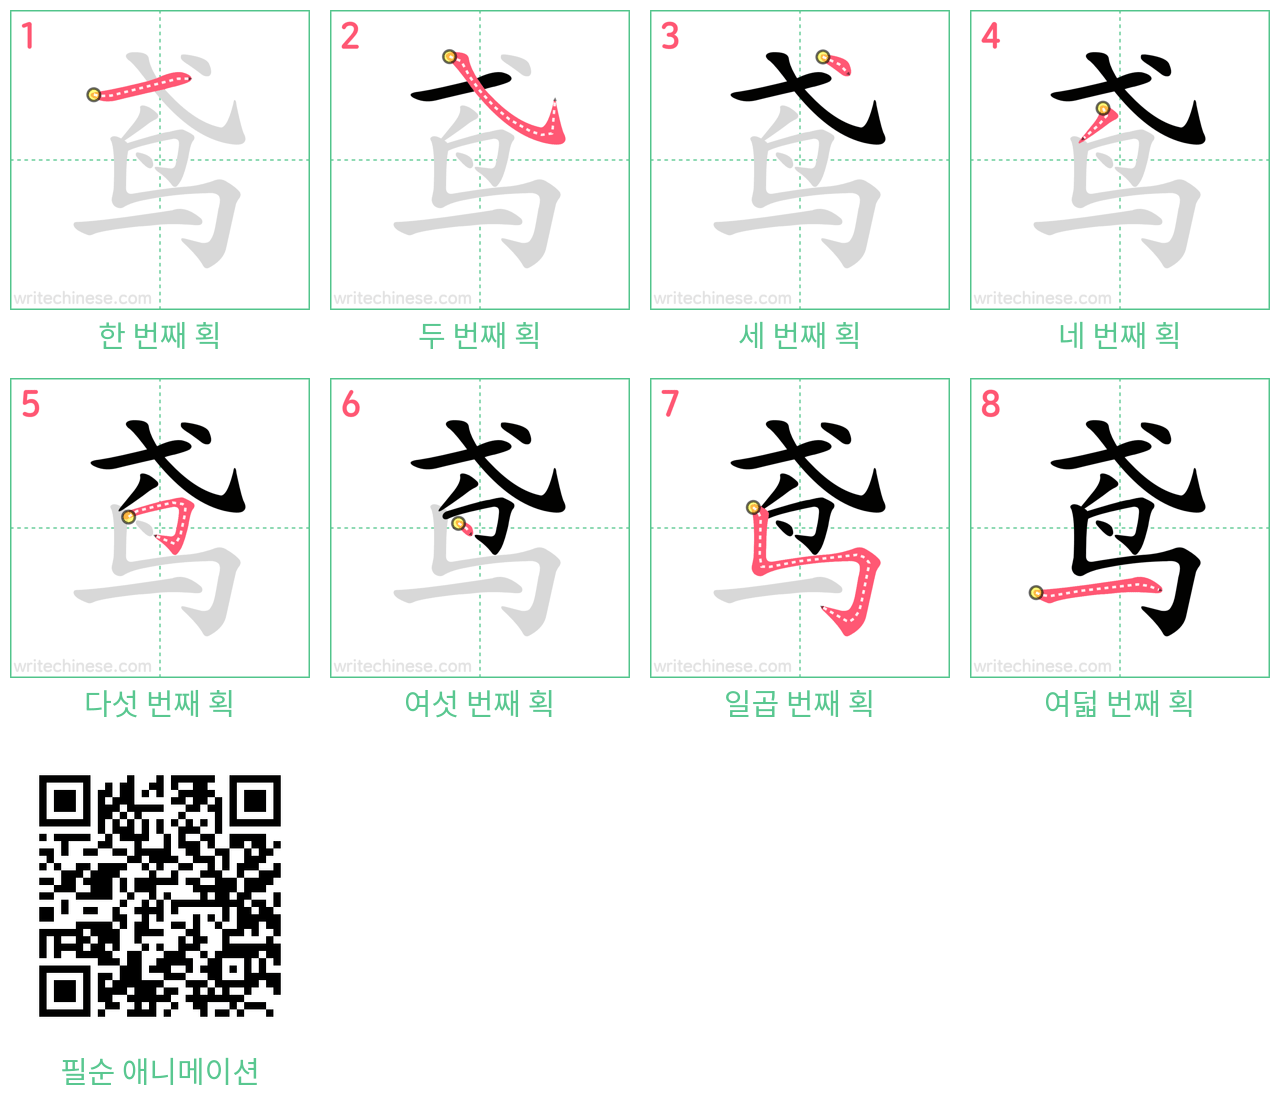 鸢 step-by-step stroke order diagrams